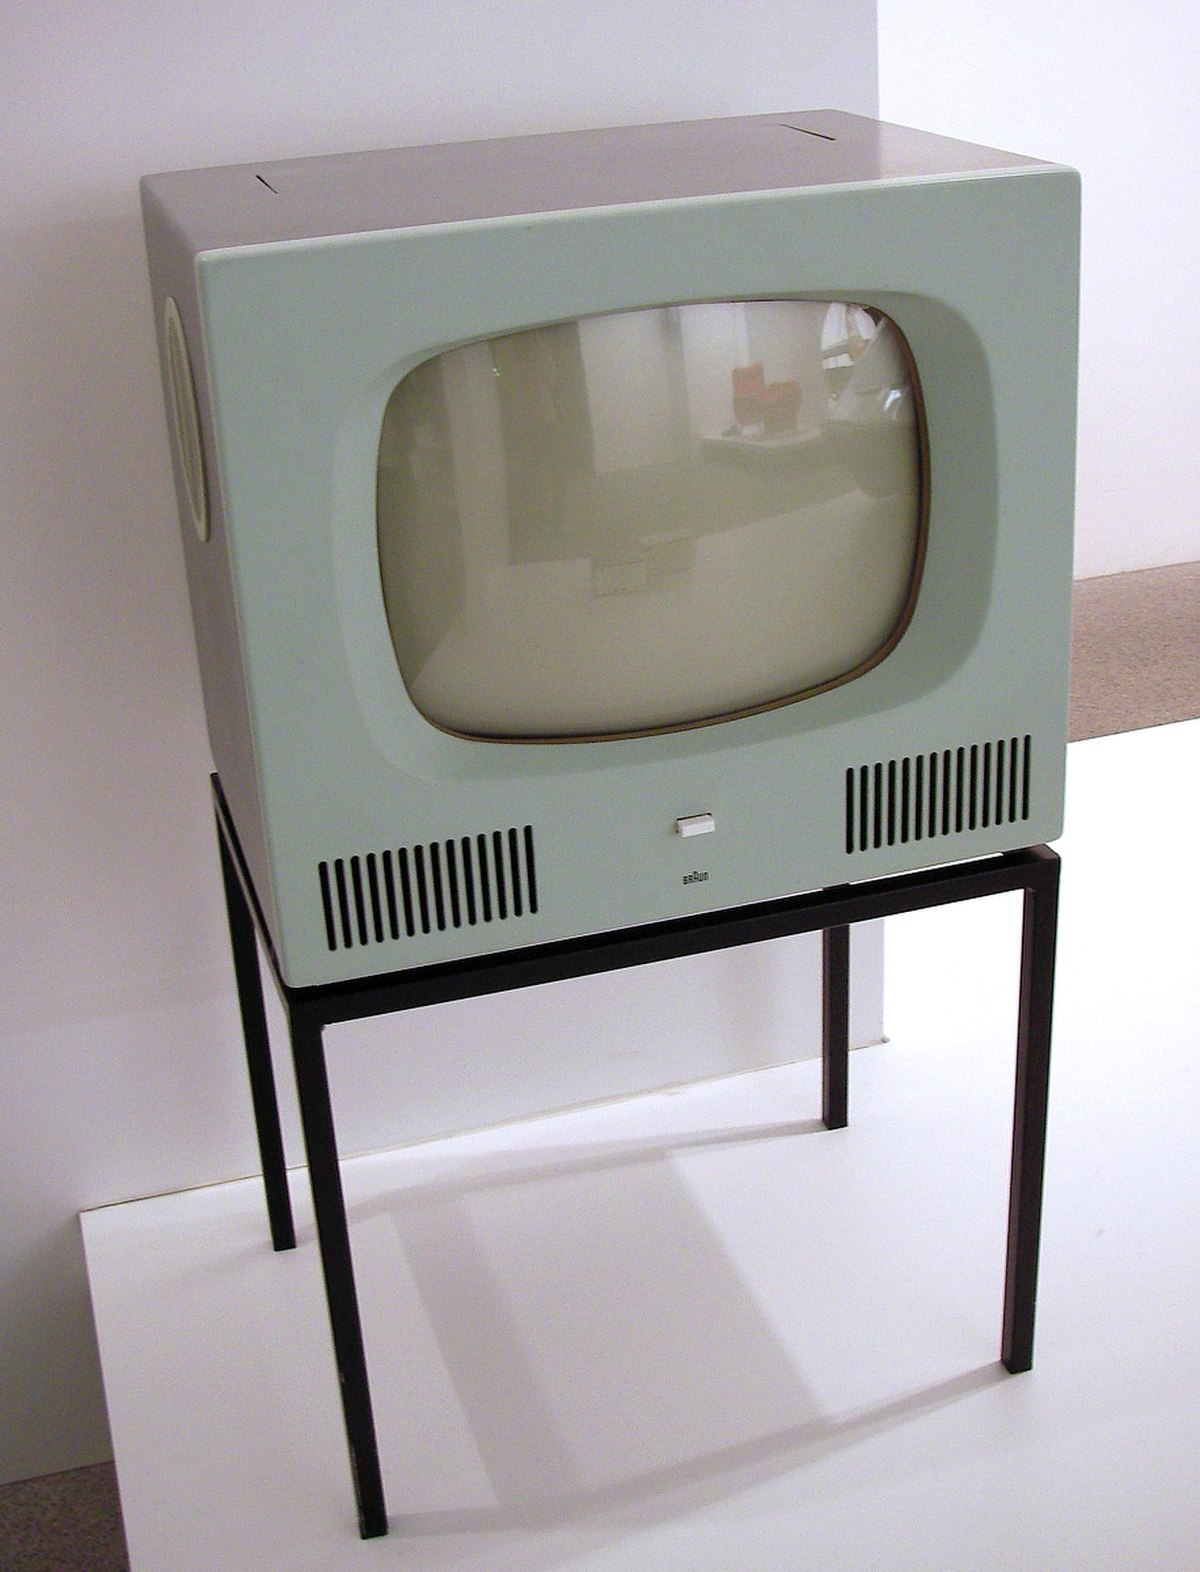 Téléviseur allemand en 1958 (Braun HF 1)